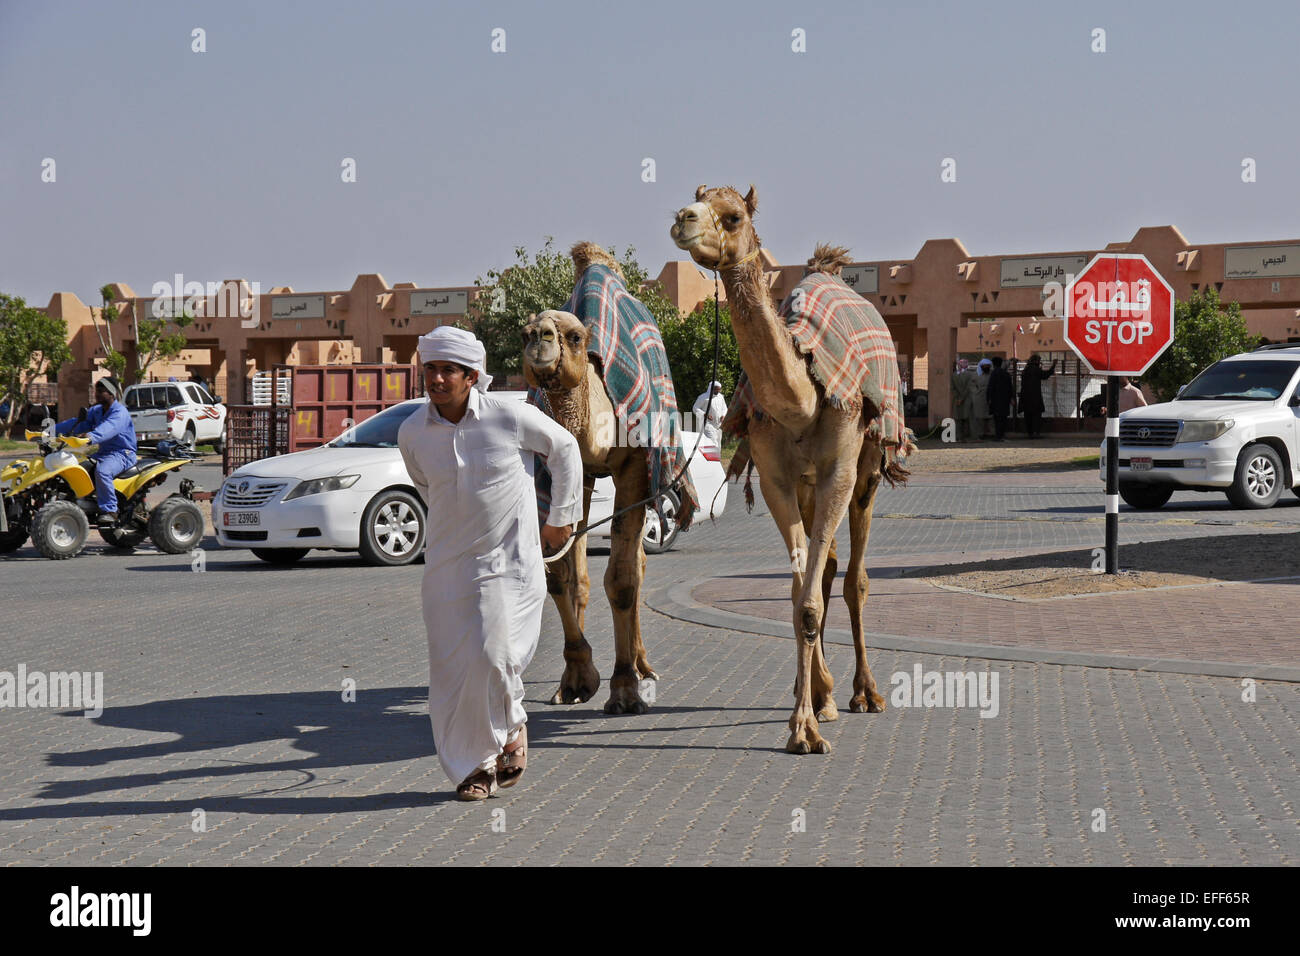 Mann verkaufte Kamele für Fleisch bei Camel vermarkten, Al Ain, Abu Dhabi, Vereinigte Arabische Emirate Stockfoto